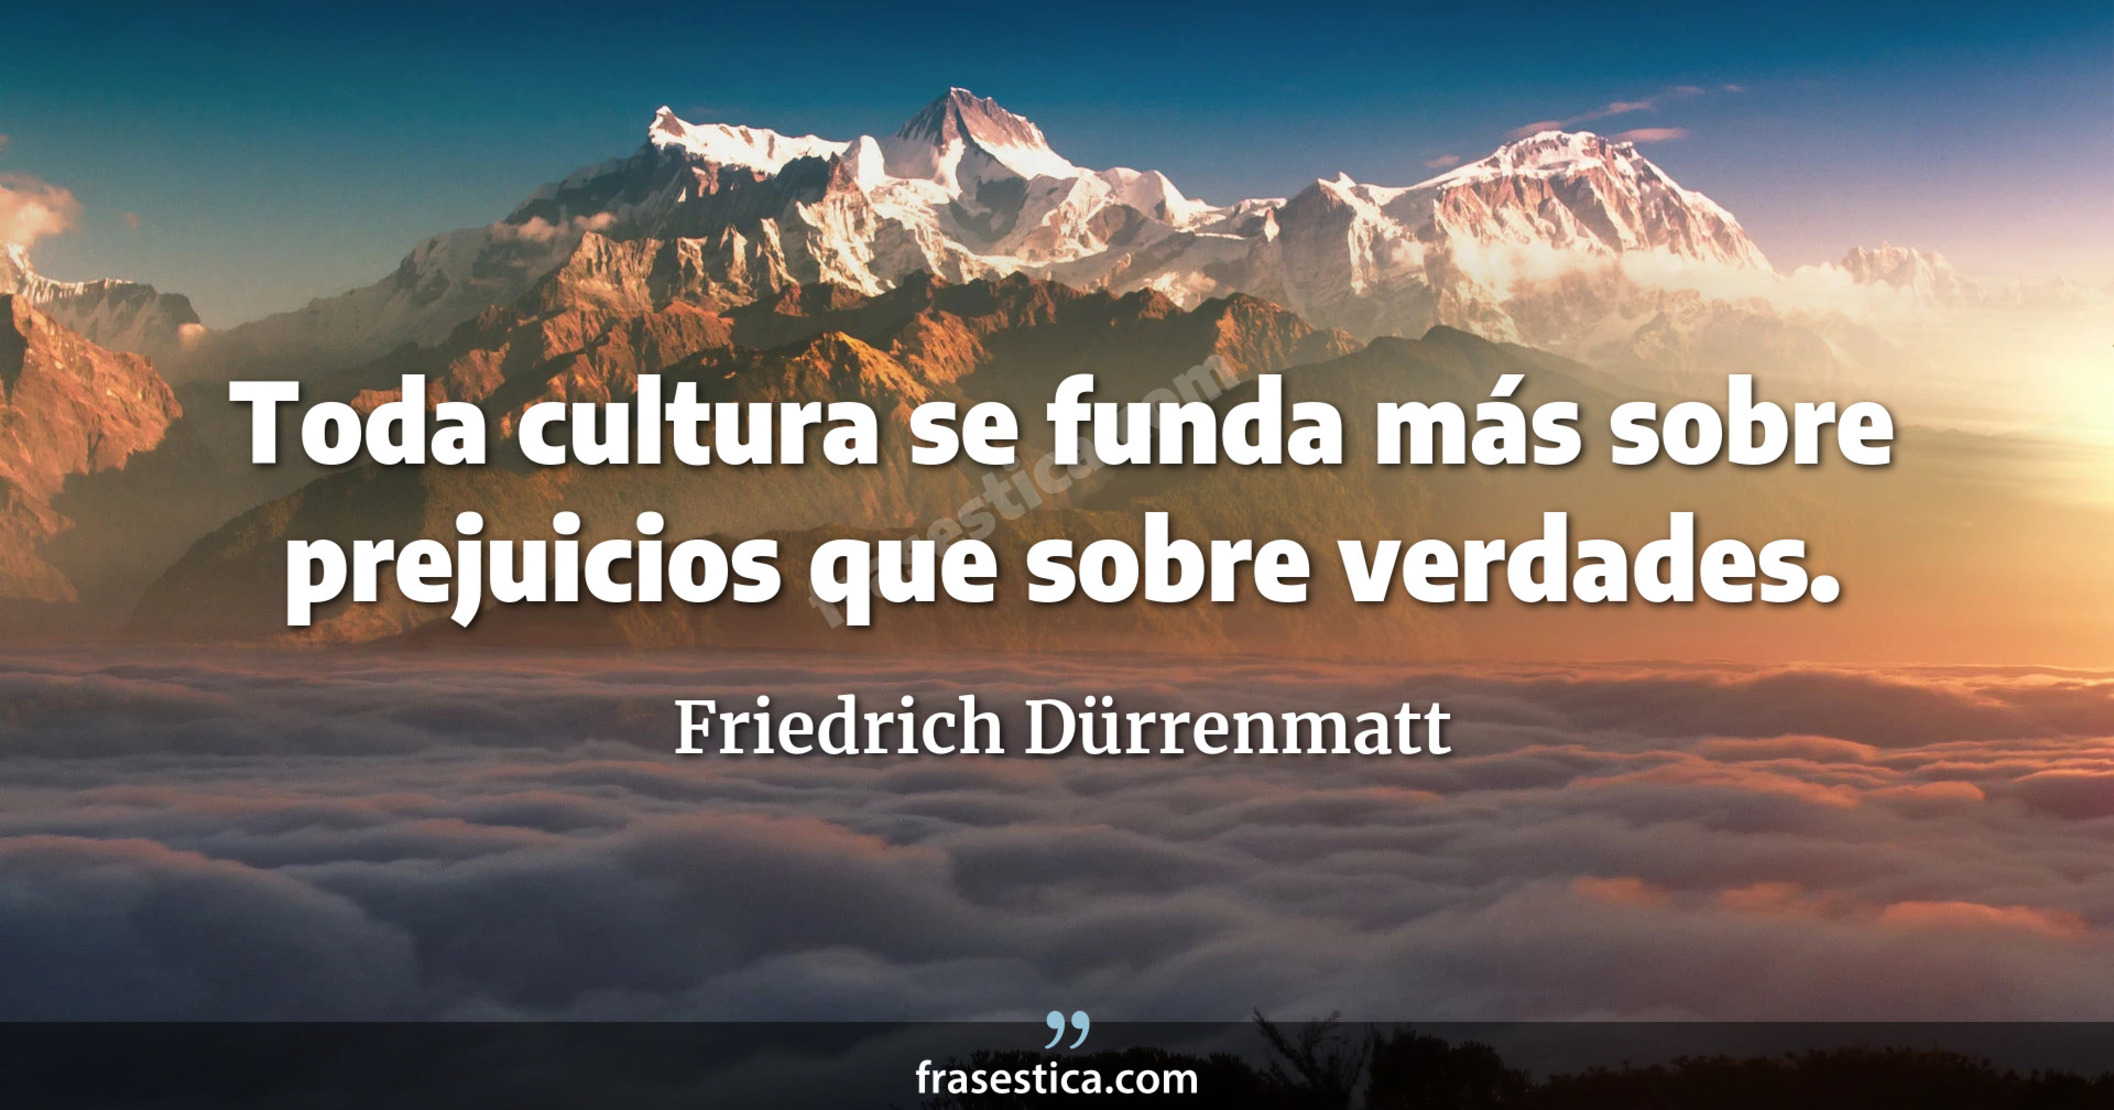 Toda cultura se funda más sobre prejuicios que sobre verdades. - Friedrich Dürrenmatt